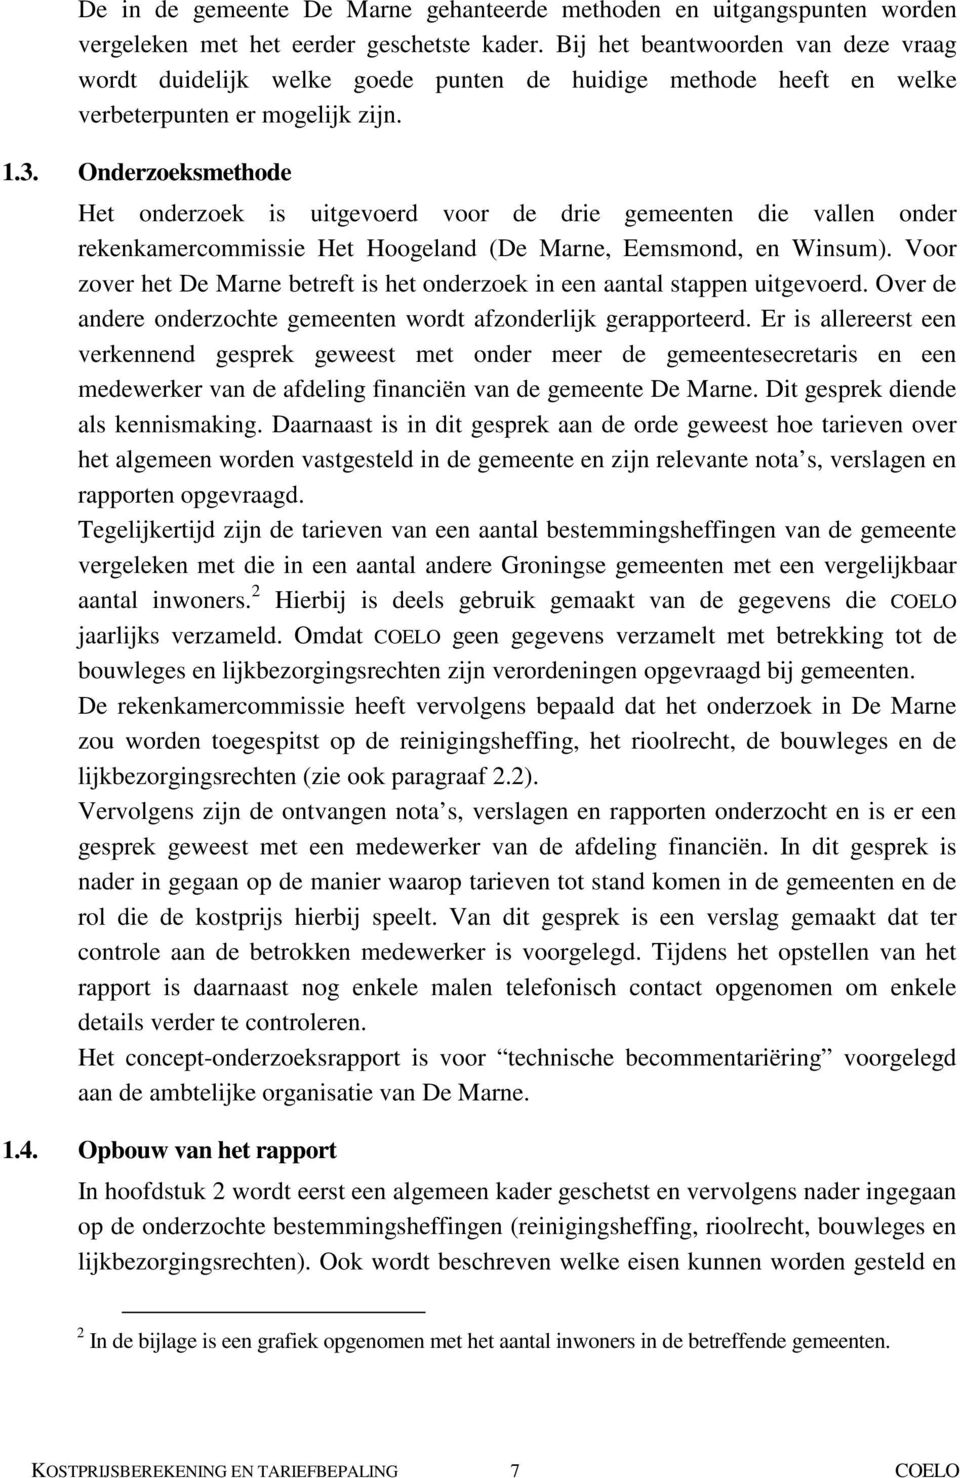 Onderzoeksmethode Het onderzoek is uitgevoerd voor de drie gemeenten die vallen onder rekenkamercommissie Het Hoogeland (De Marne, Eemsmond, en Winsum).